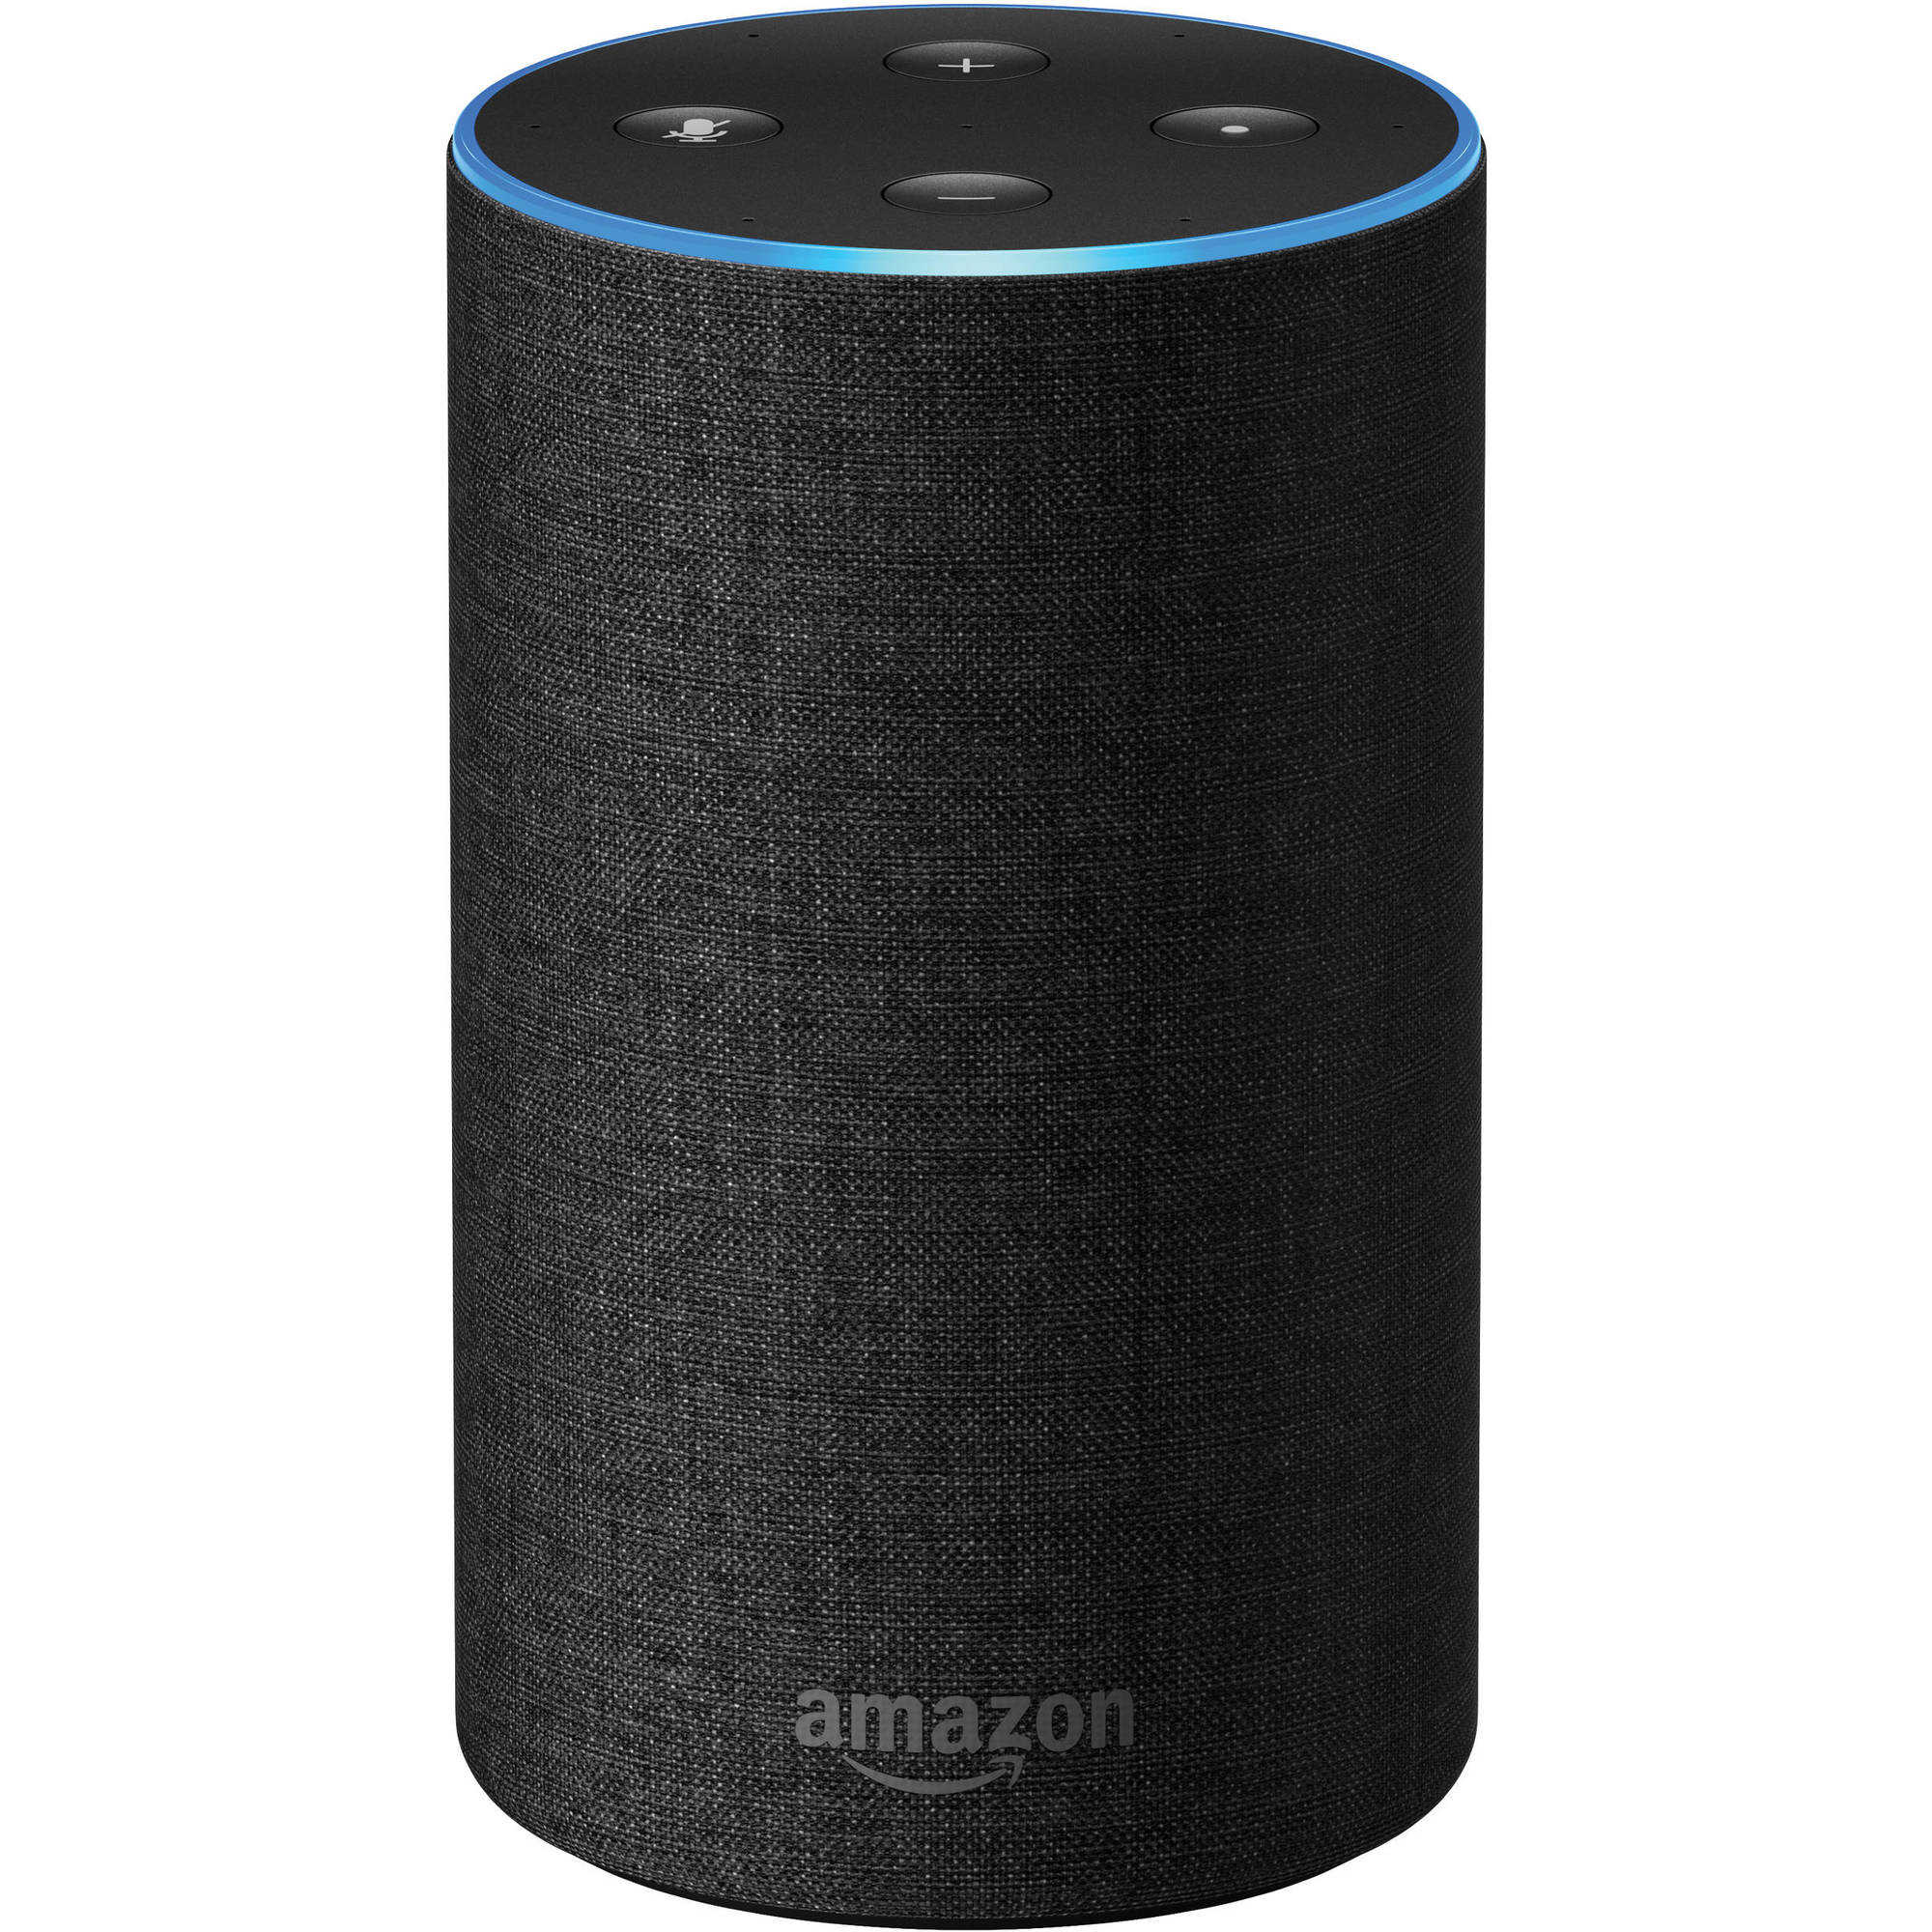 Amazon echo amazon echo 2nd generation charcoal 1365629 Les nouveaux Amazon Echo sont là ! Alexa